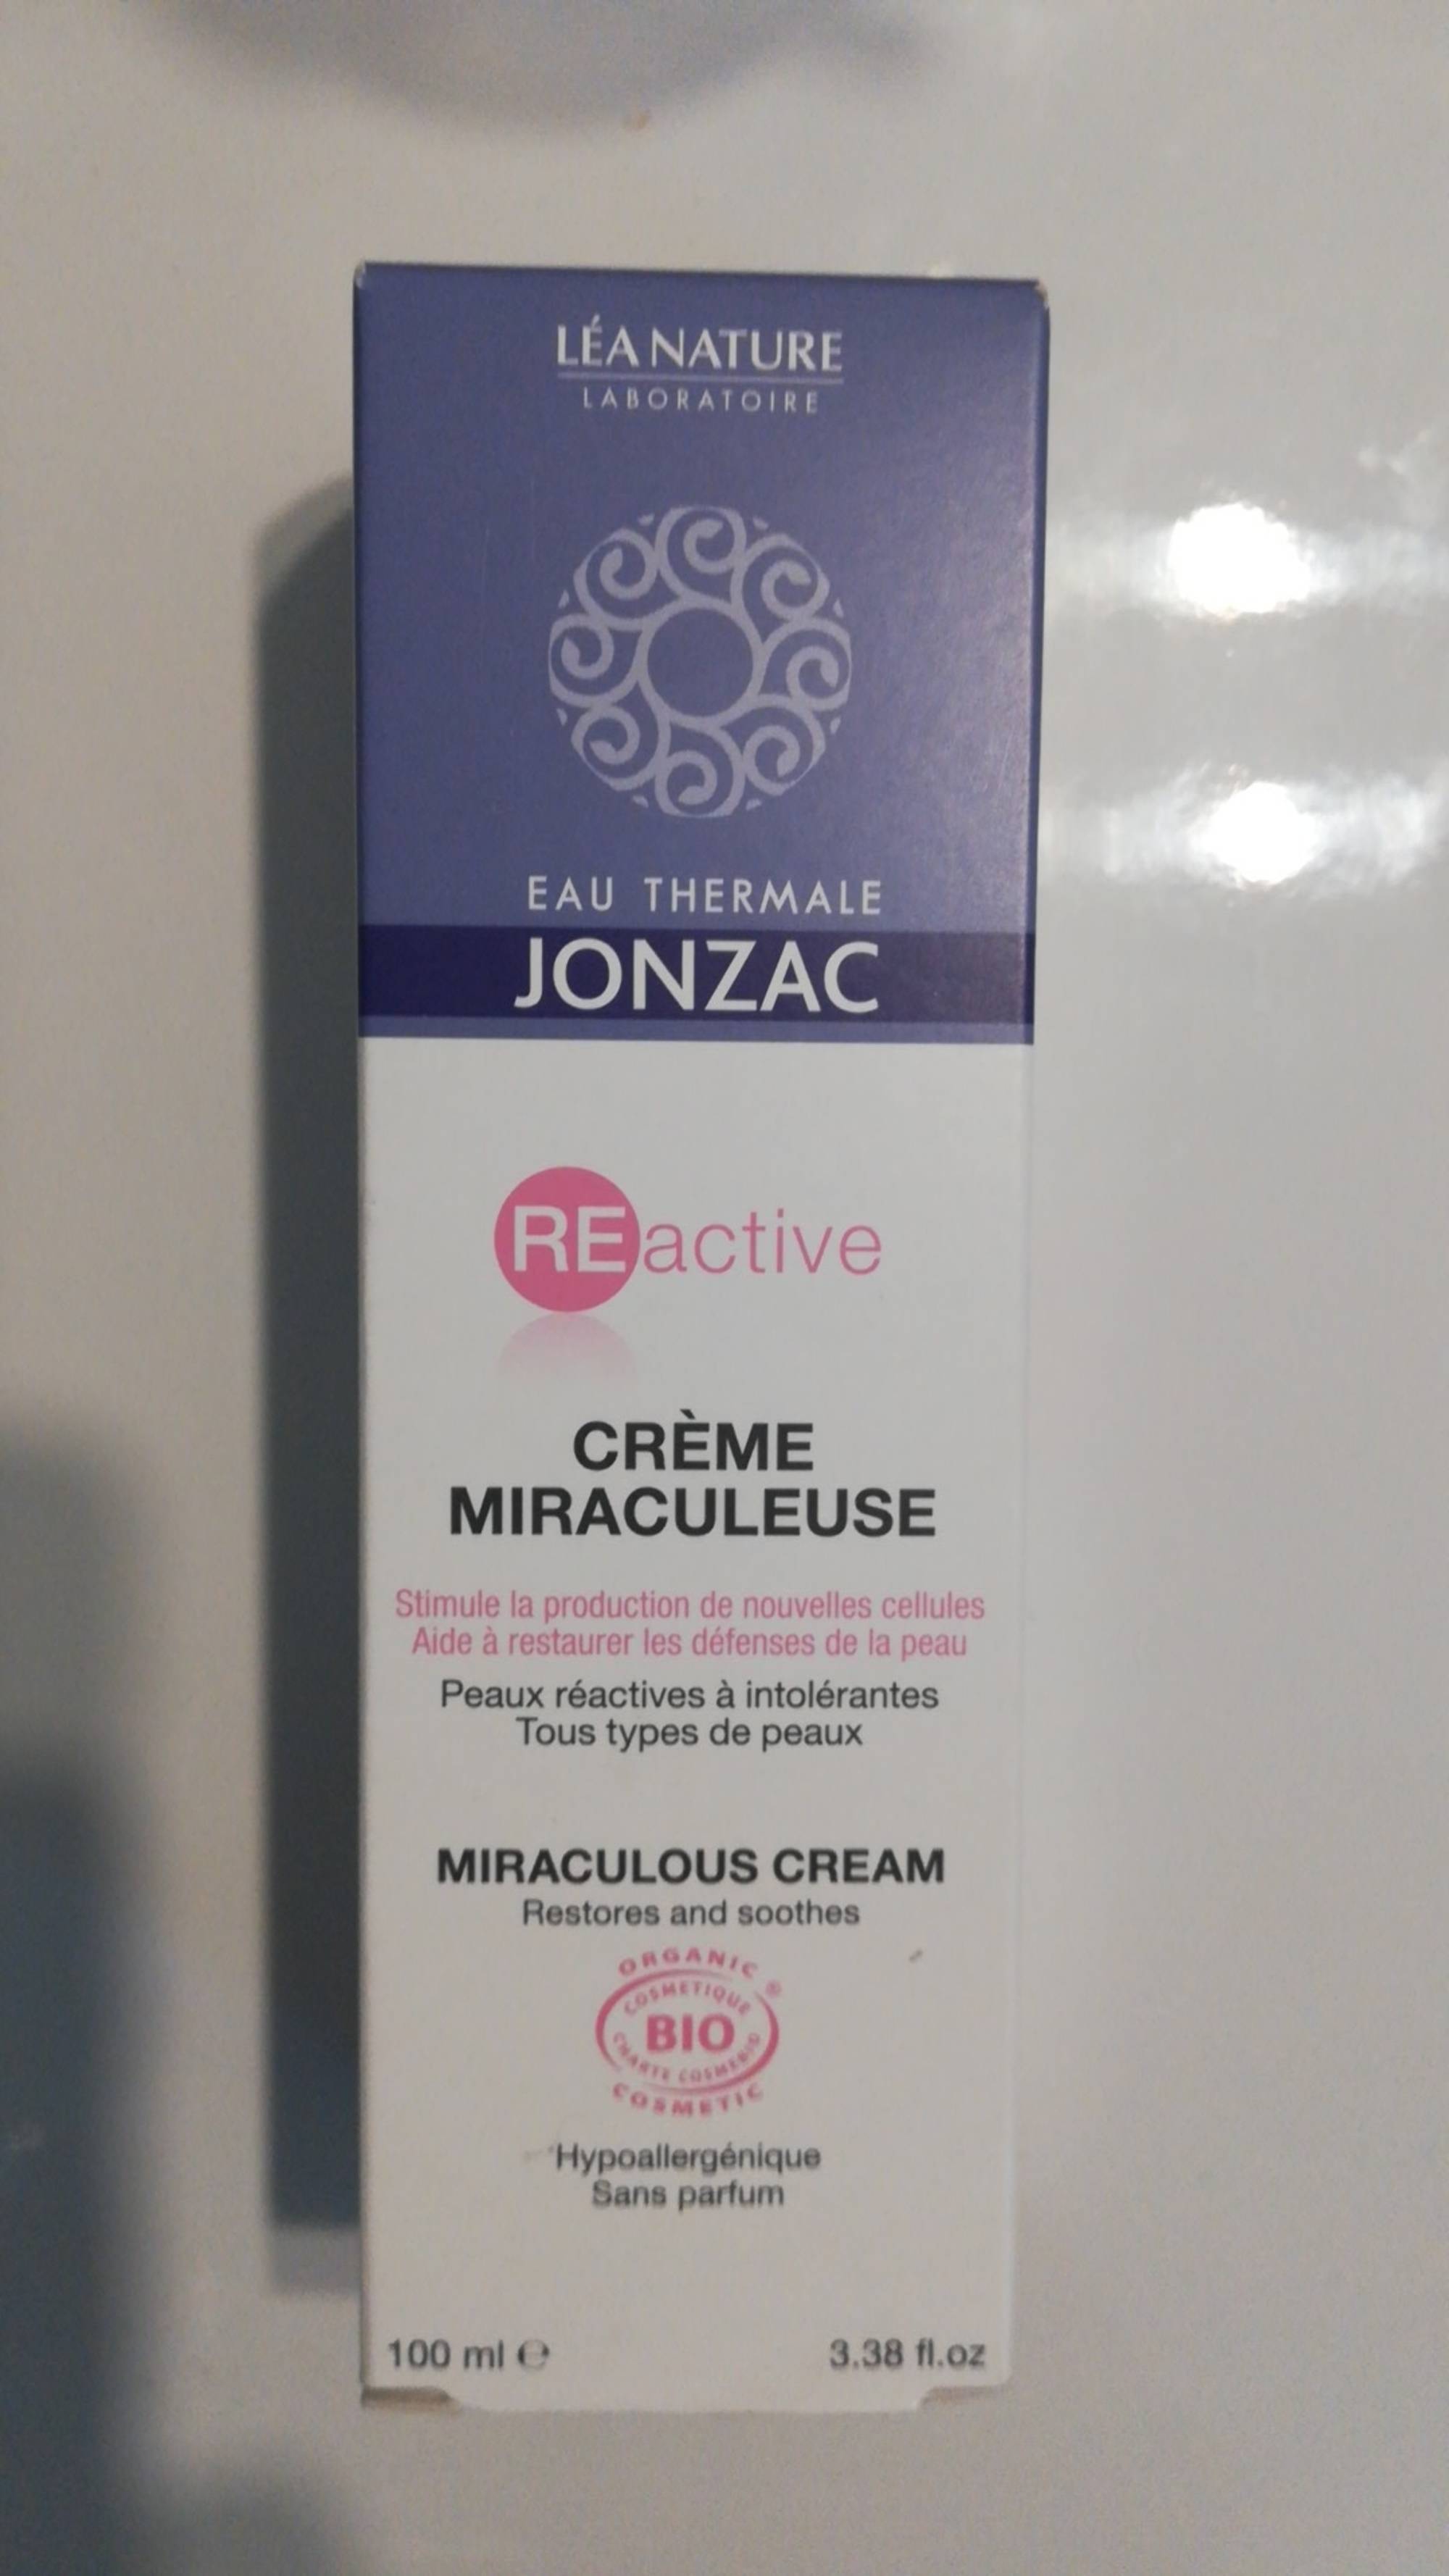 EAU THERMALE JONZAC - Reactive - Crème miraculeuse